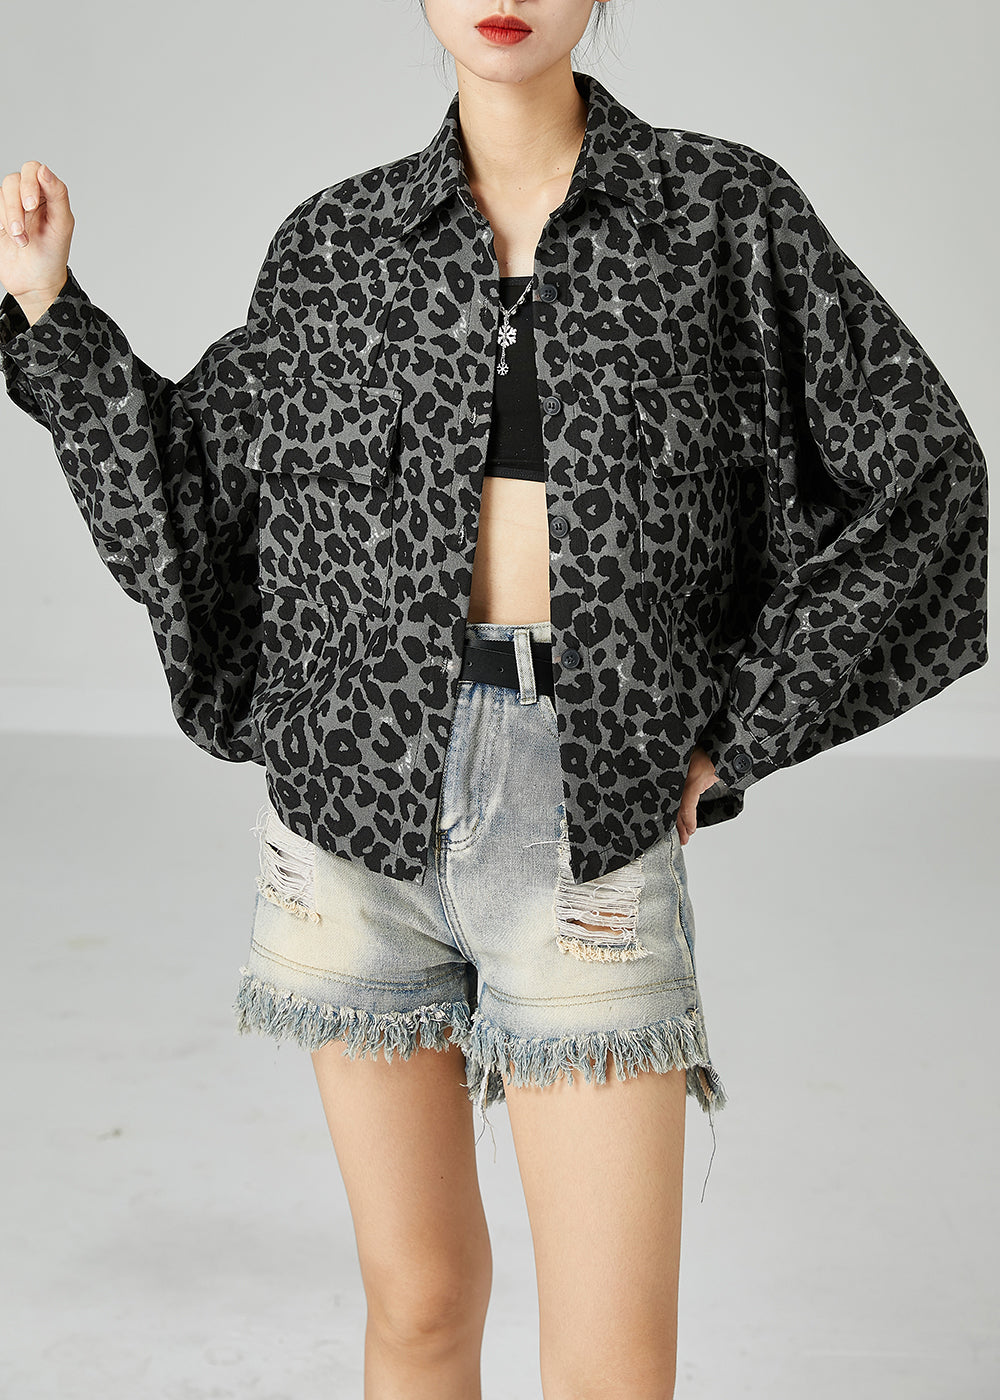 Grey Leopard Print Cotton Coats Peter Pan Collar Pocket Batwing Sleeve LY2440 - fabuloryshop